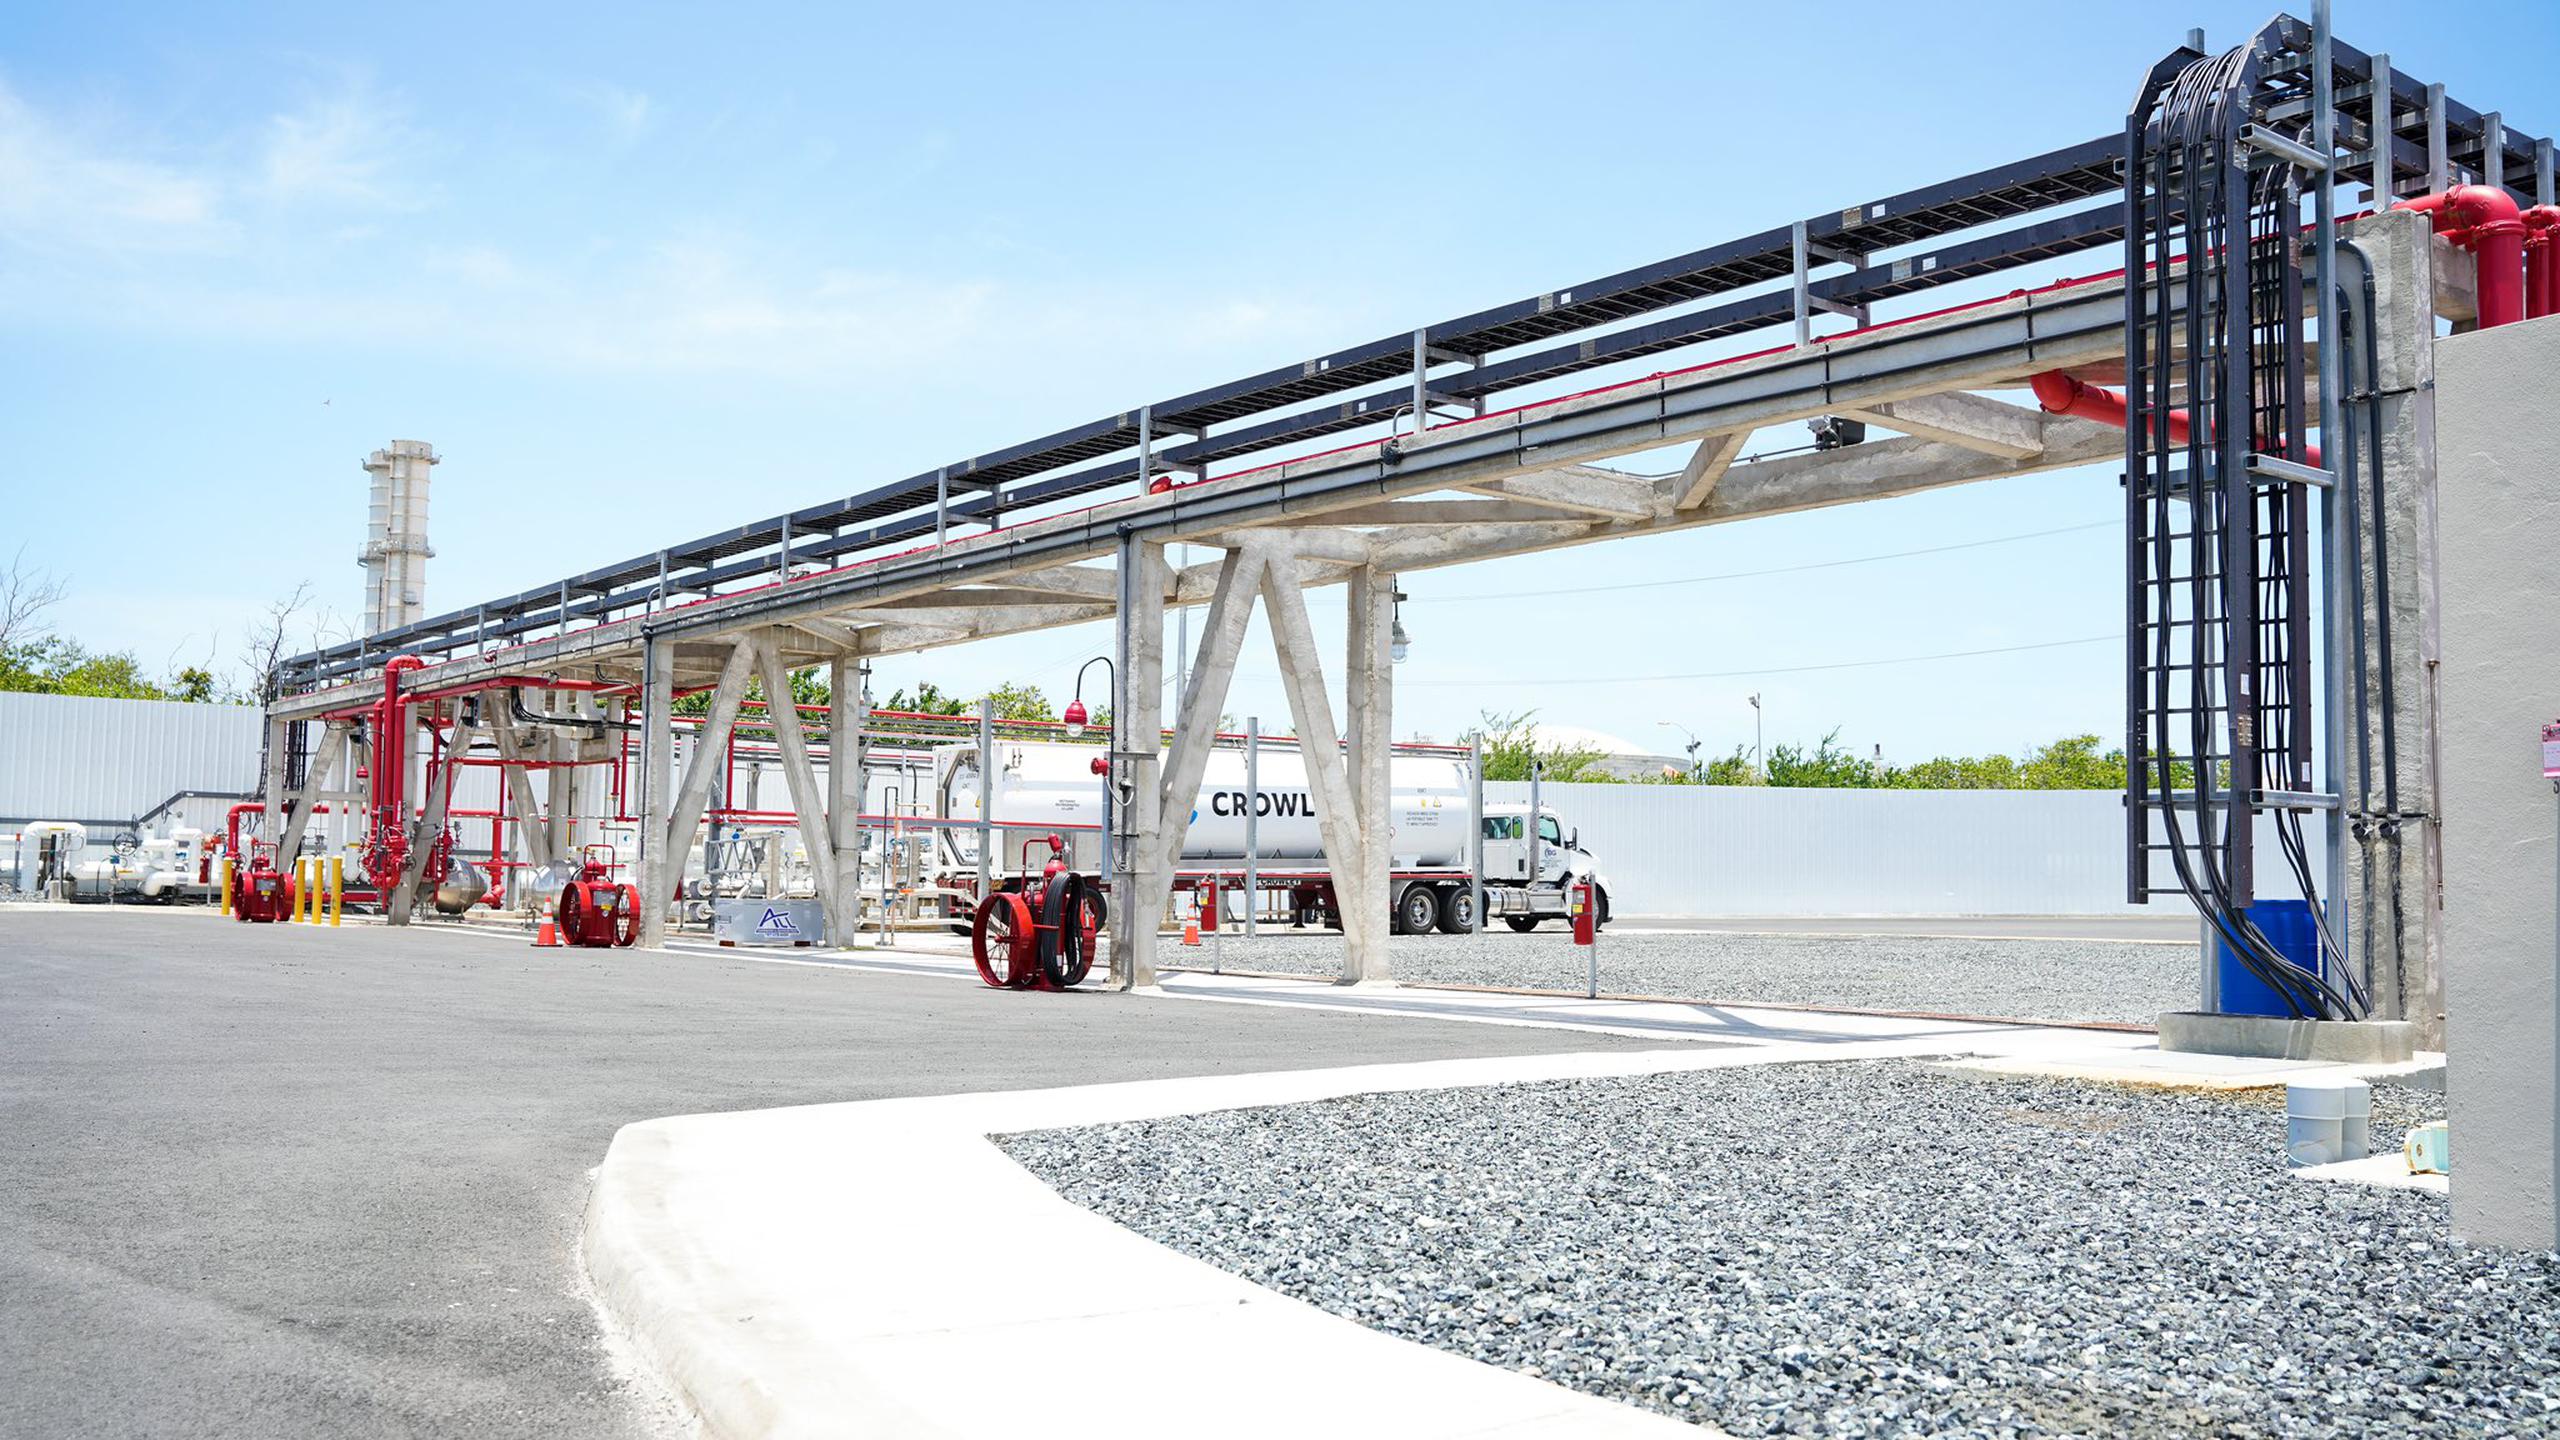 Se espera que la instalación proporcione más de 94 millones de galones de combustible alternativo al año a industrias clientes mientras construyen resiliencia dentro del sistema de suministro de energía de la isla.